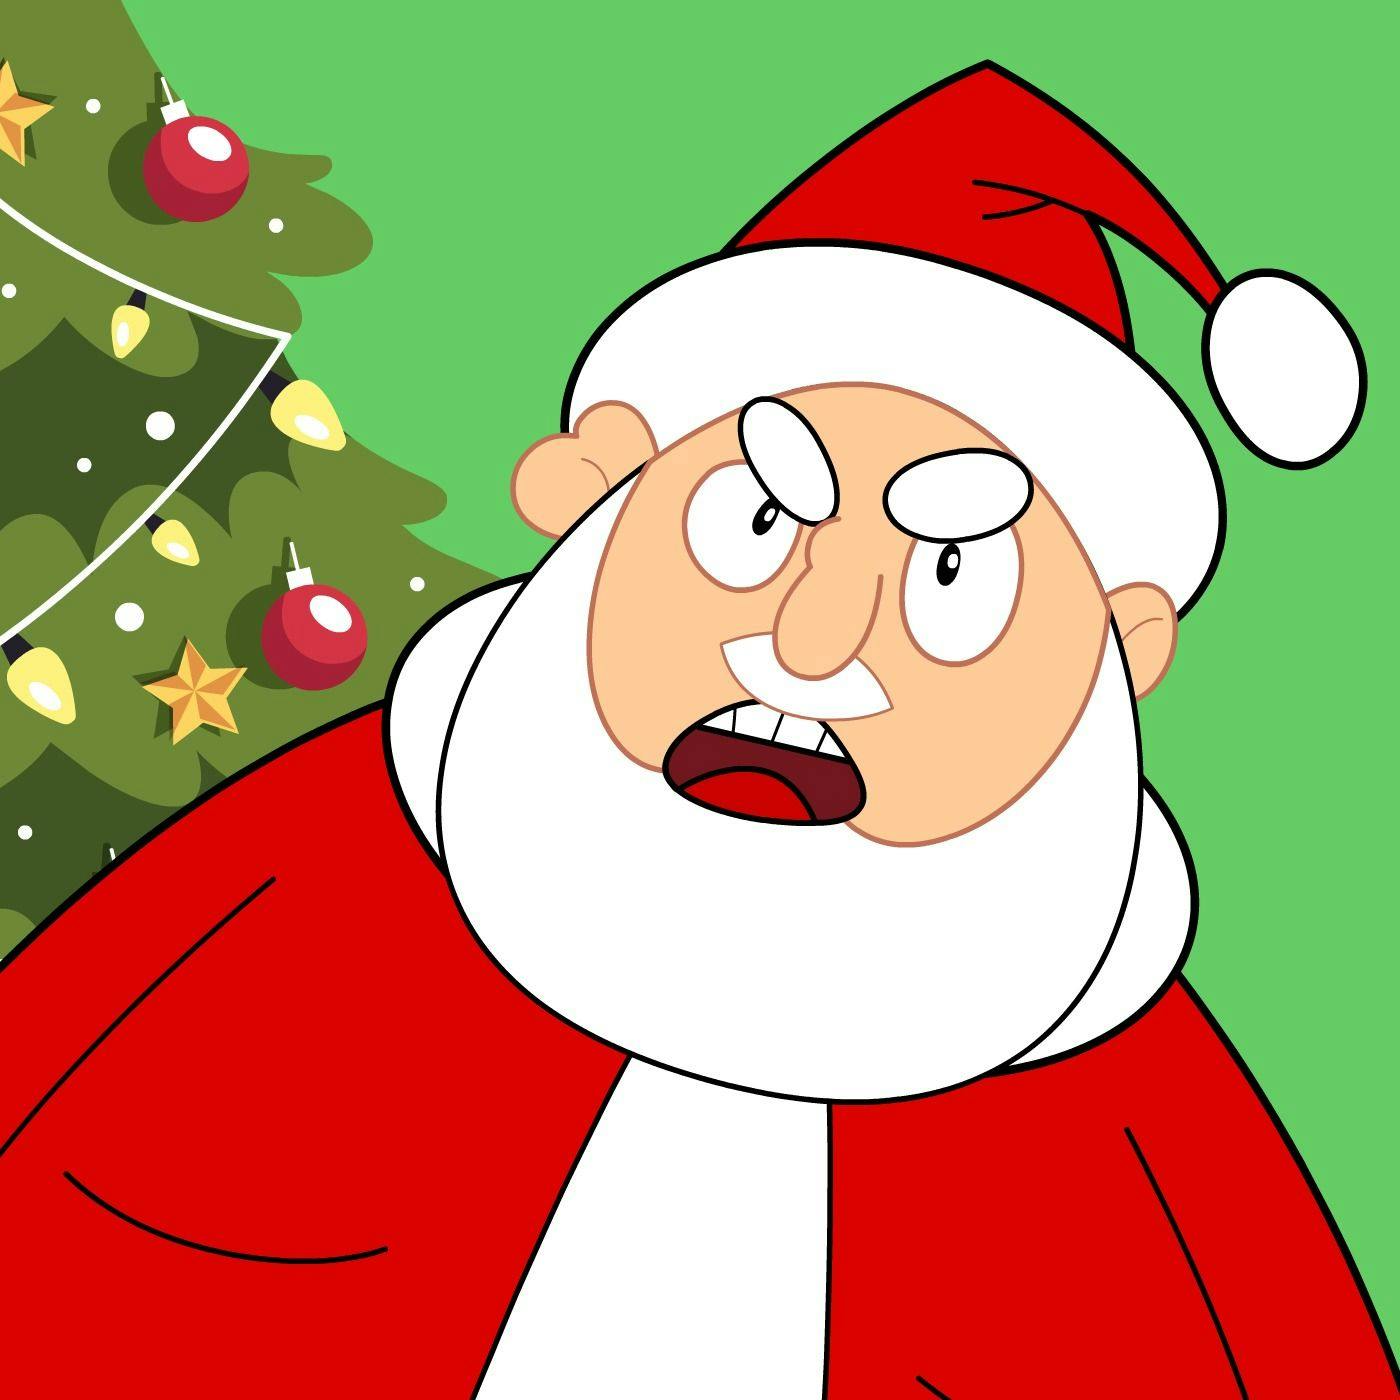 Santa Shows Up And Yells At His Elves!